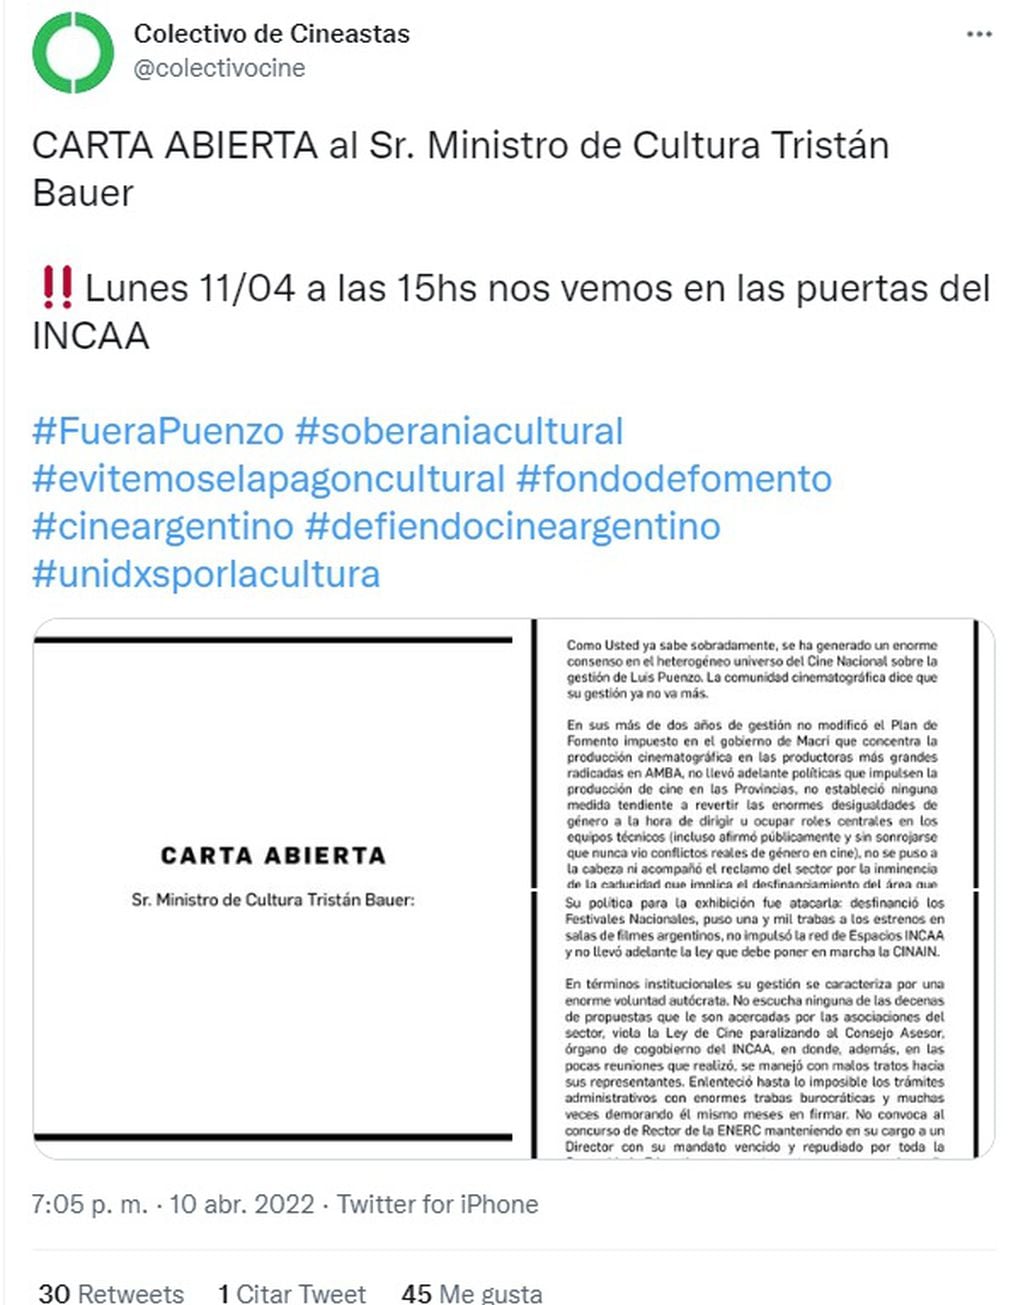 Carta del Colectivo de Cineastas contra la conducción actual del Incaa (Twitter)